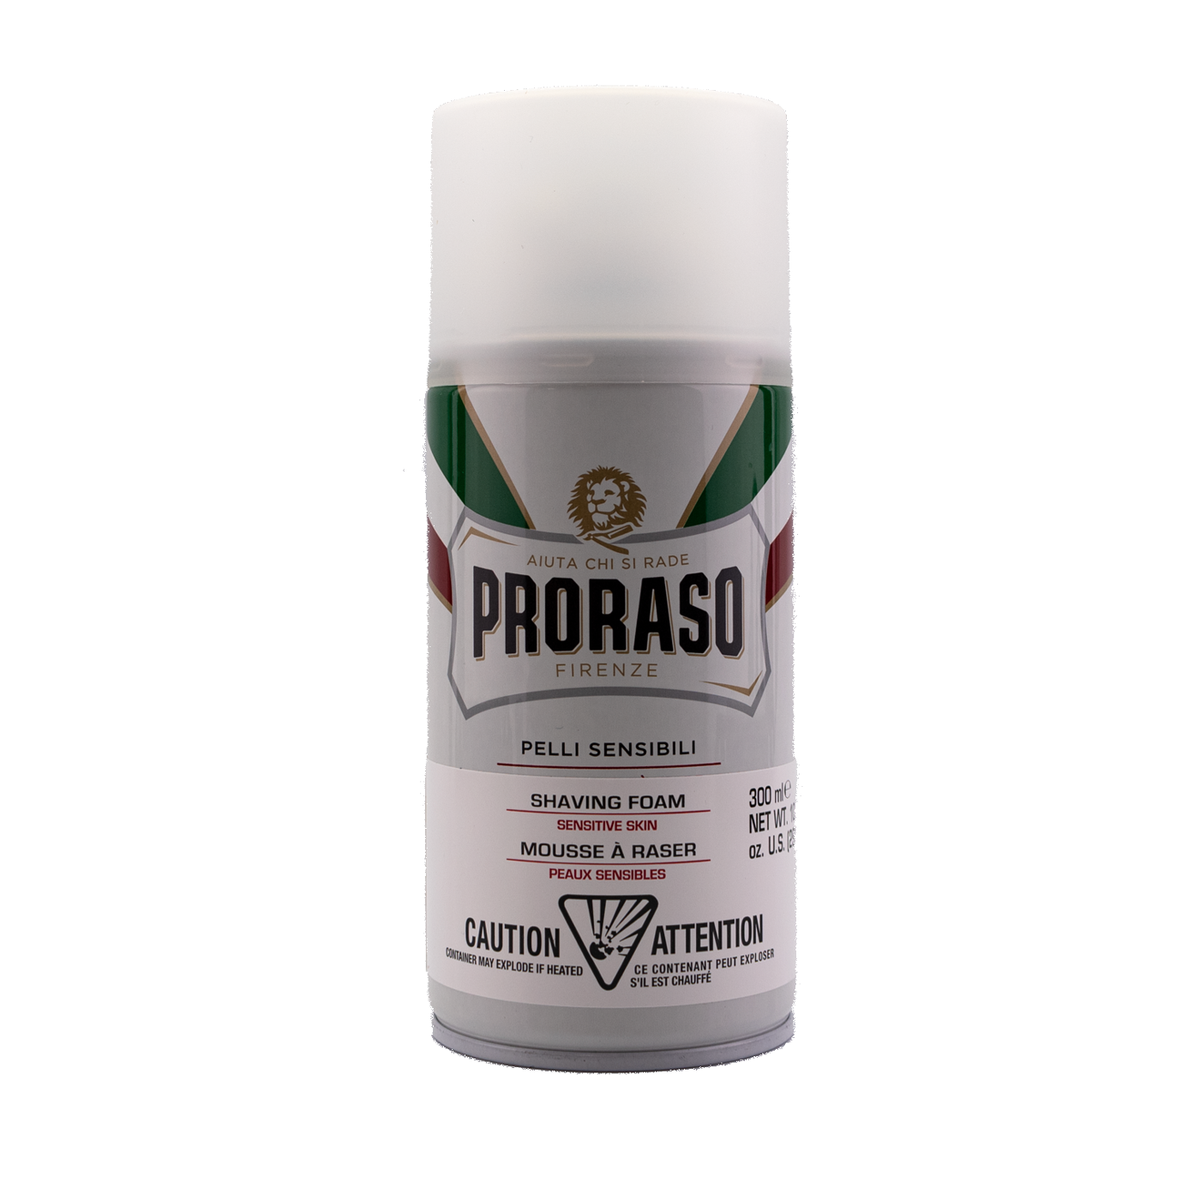 Proraso Shaving Foam- Sensitive Skin Formula